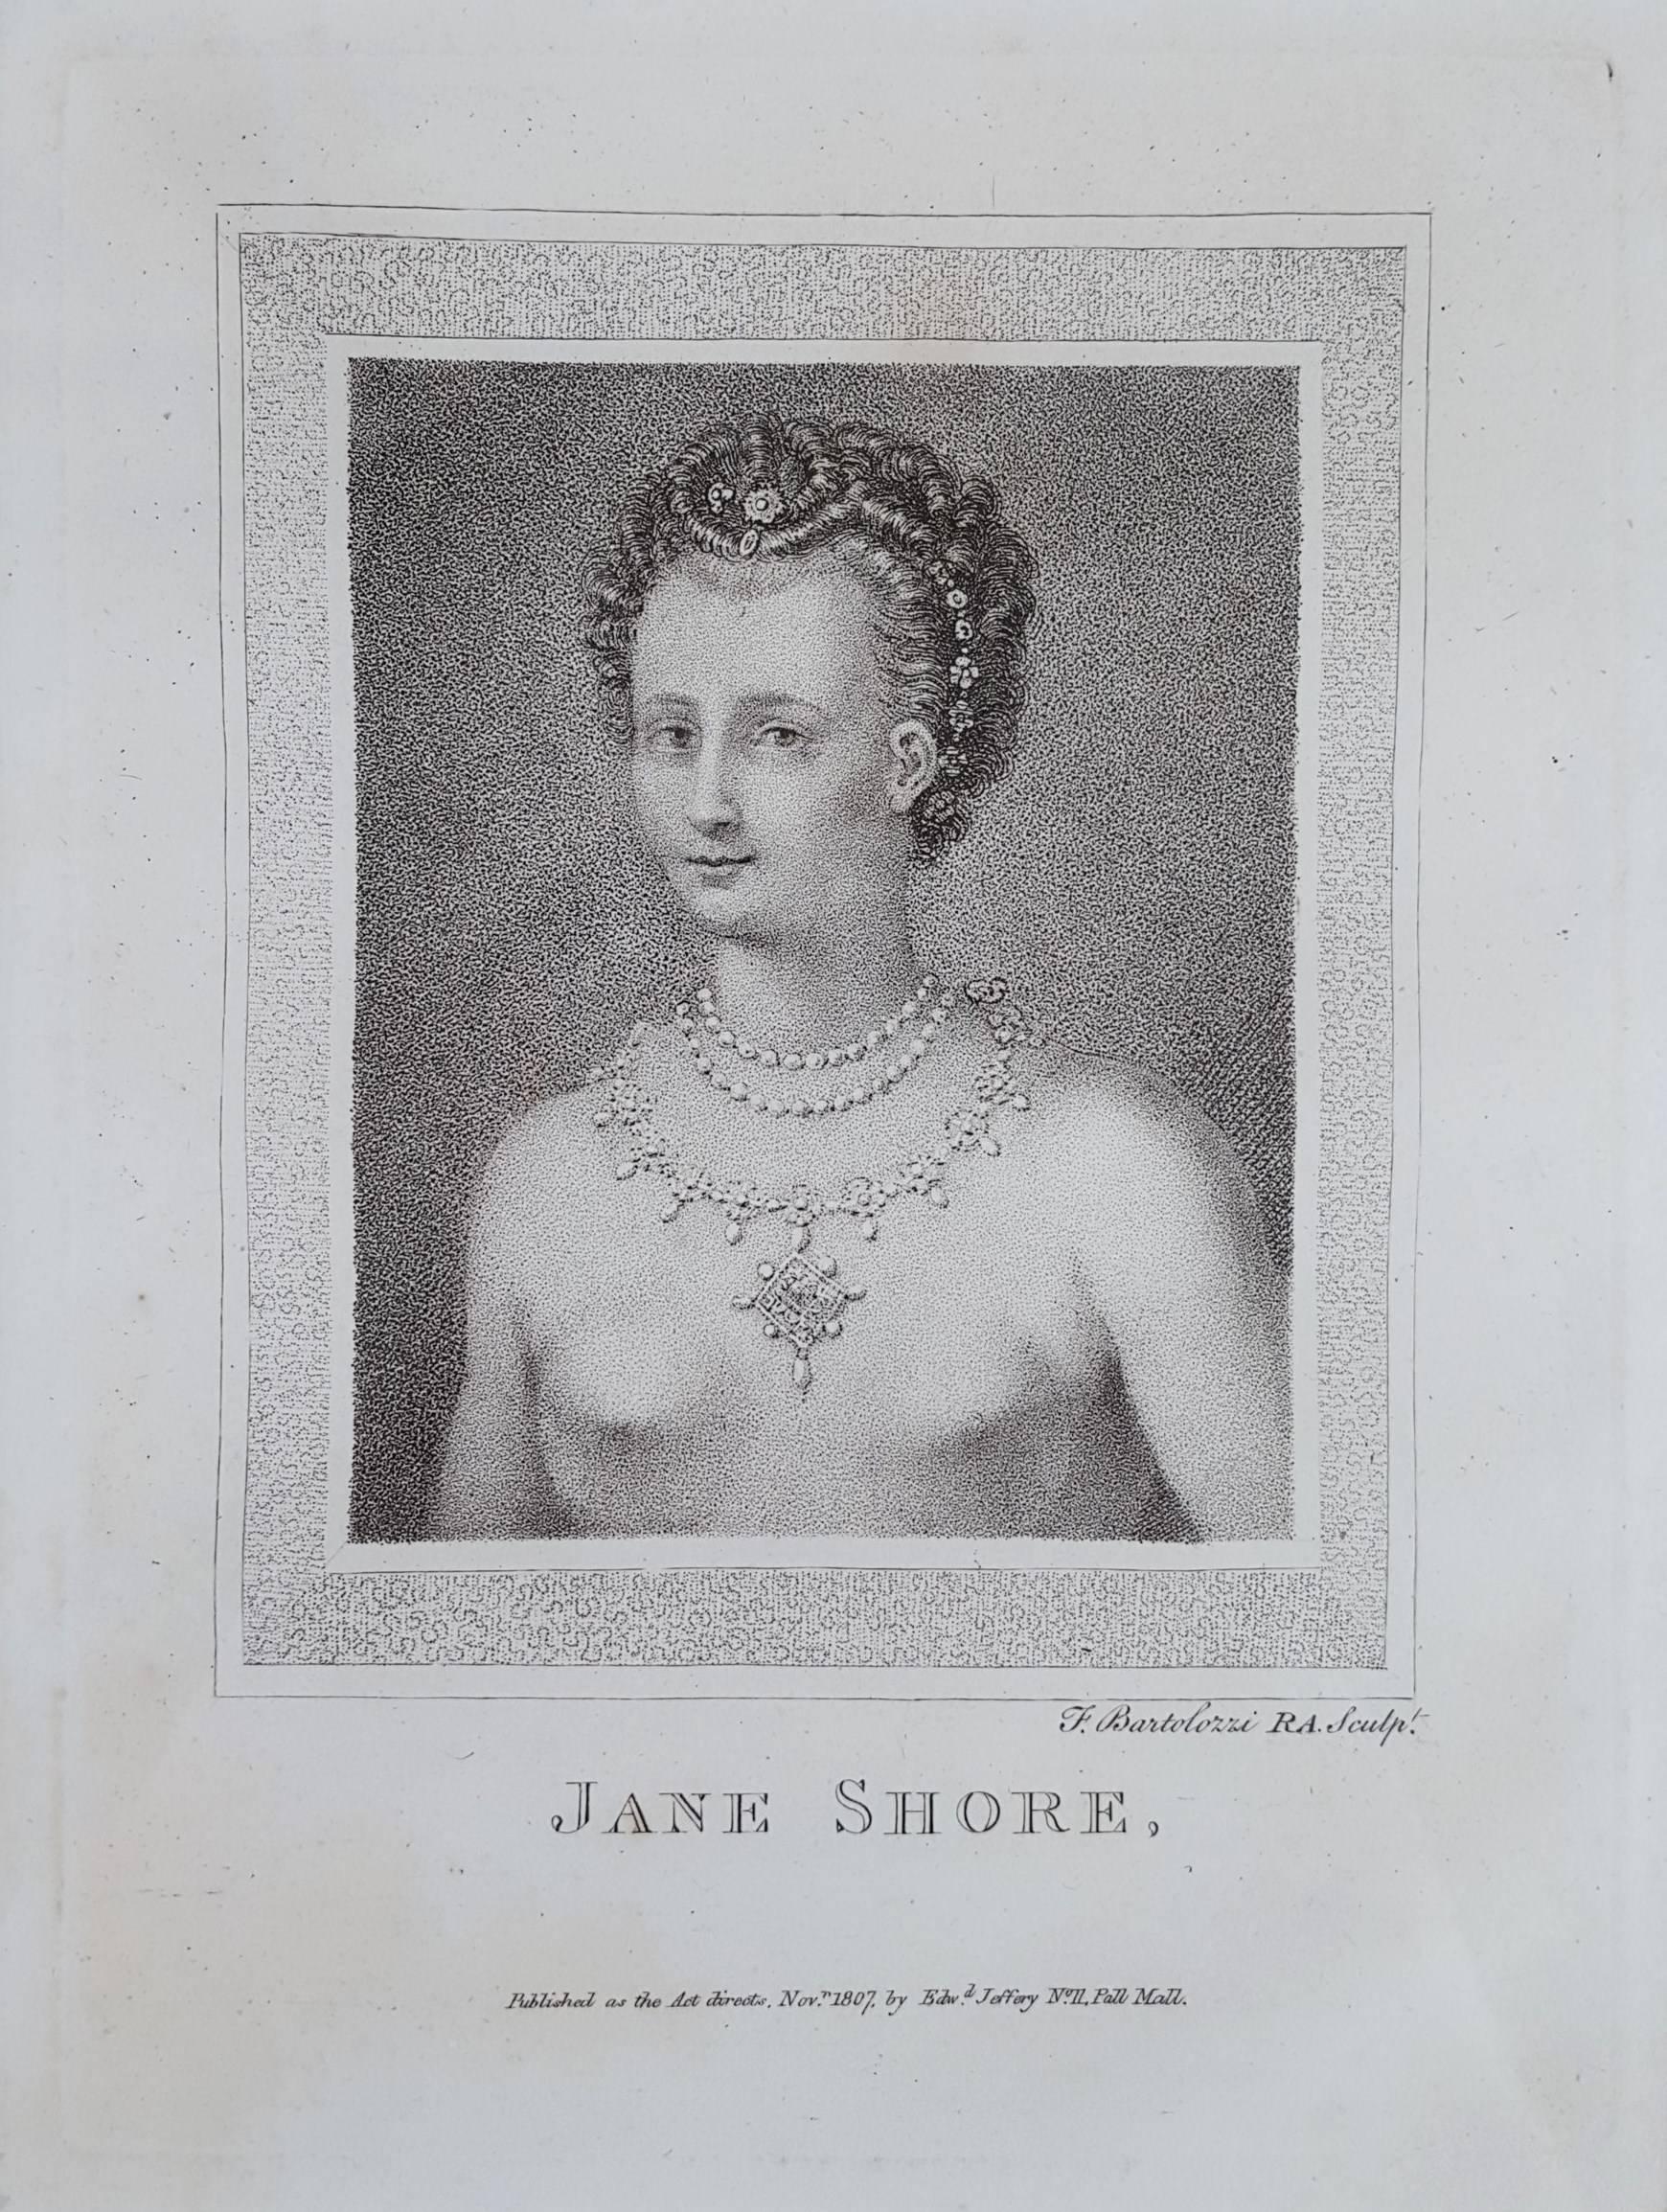 jane shore portrait